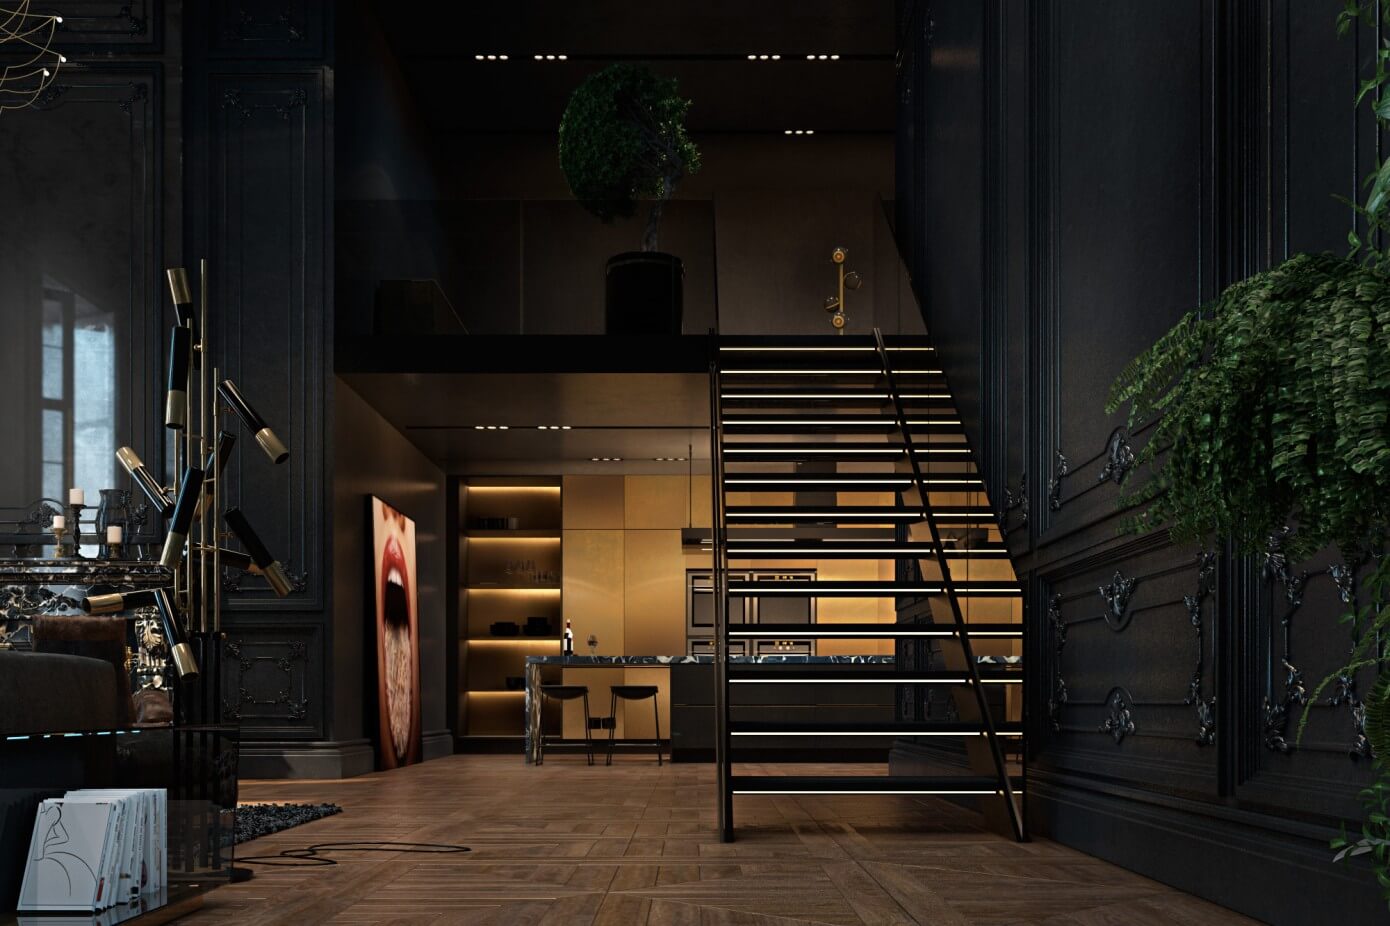 Apartment in Paris by Iryna Dzhemesiuk & Vitaliy Yurov